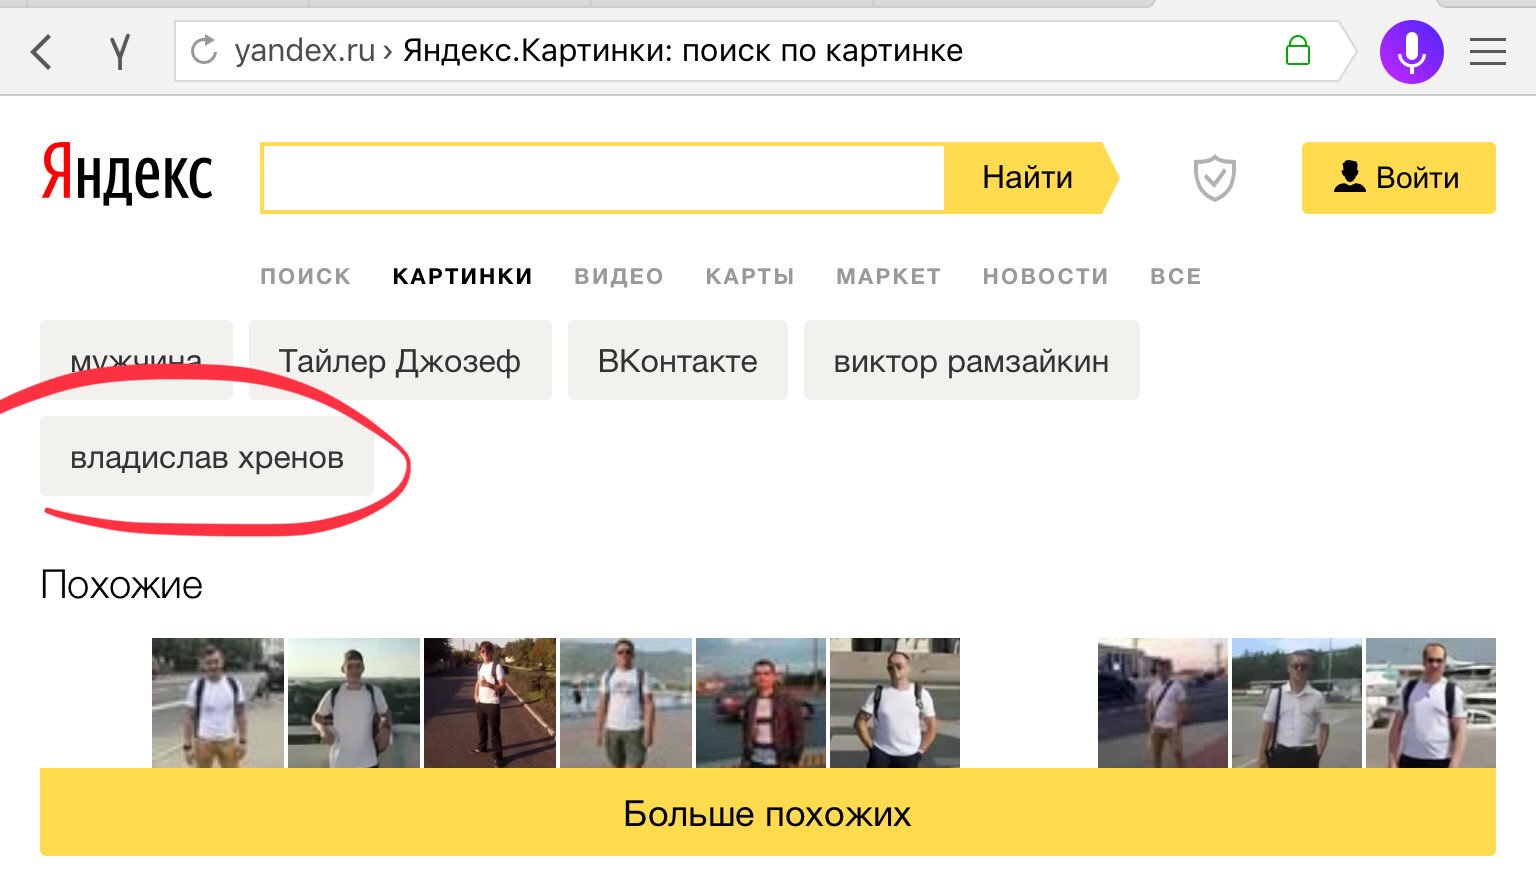 Найти через фото в яндексе телефон картинку. Искать картинку по картинке в Яндексе.